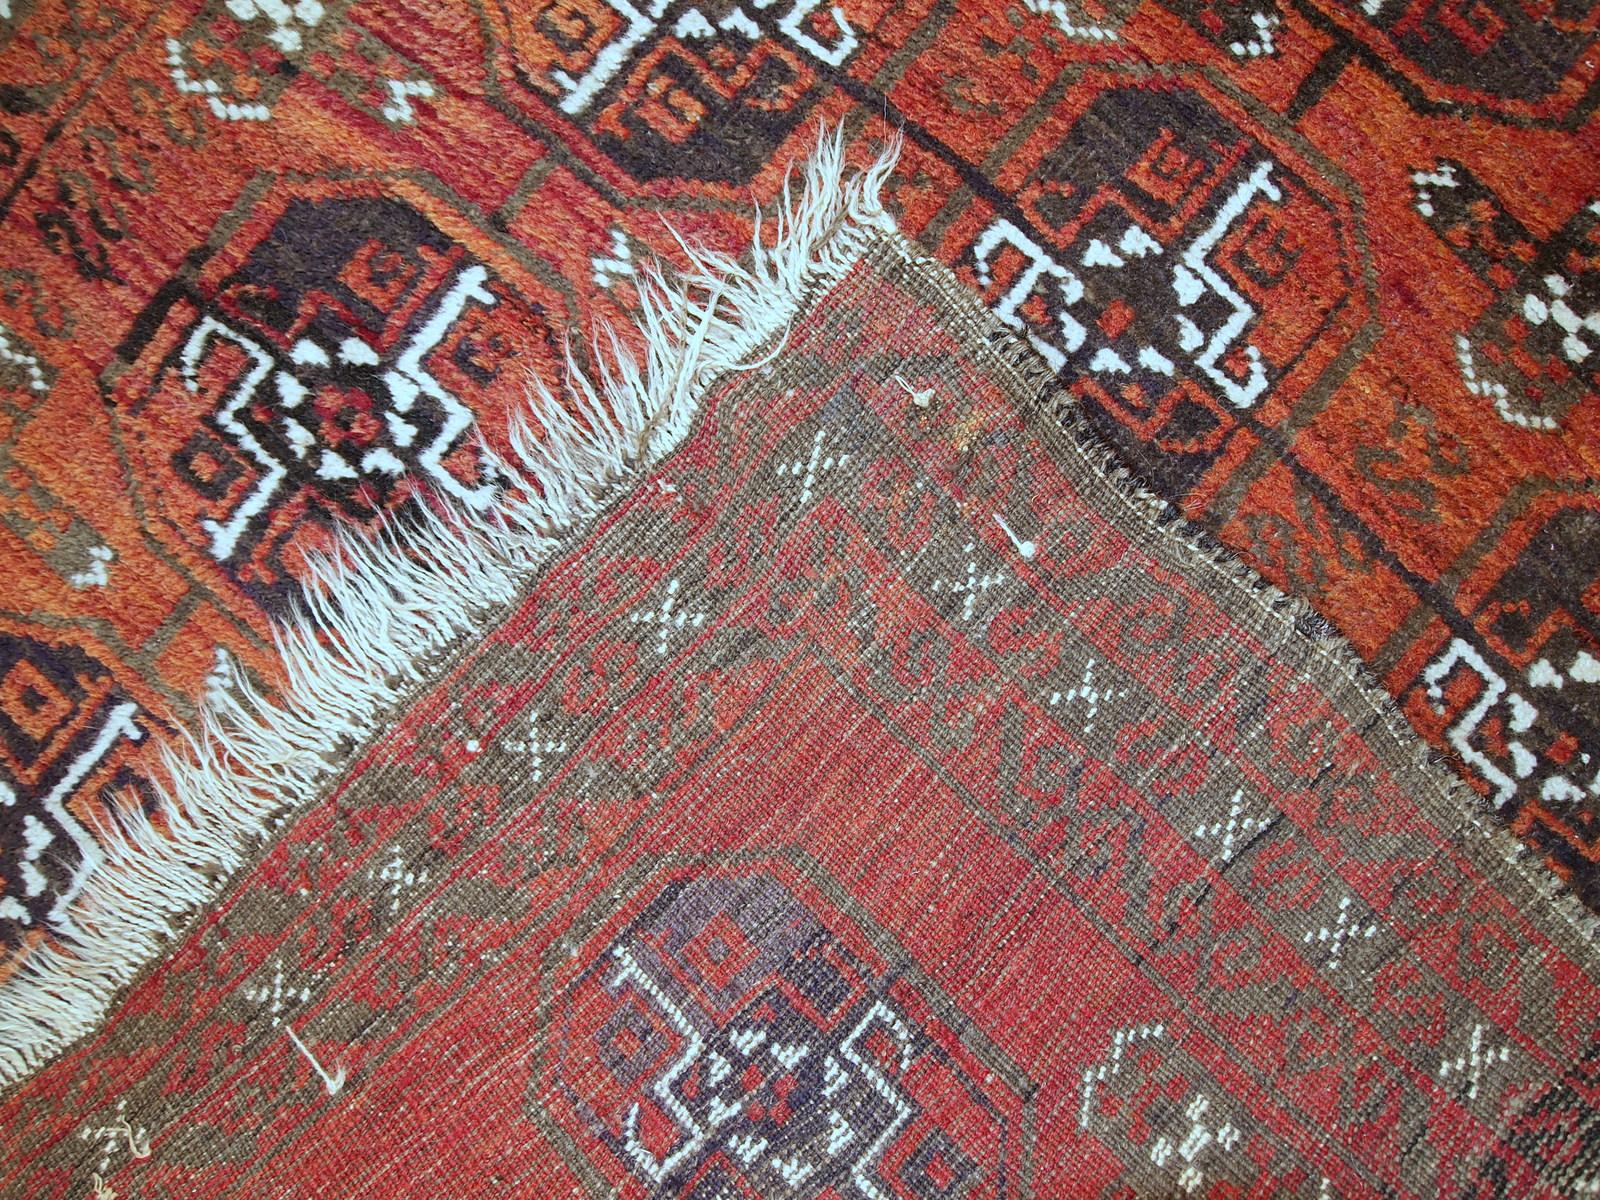 Antiker handgefertigter afghanischer Belutschenteppich in gutem Originalzustand. Dieser Teppich ist in einem ziegelroten Farbton mit einem sich wiederholenden Muster.

-zustand: original gut,

-um: 1900,

-größe: 3' x 5' (92cm x